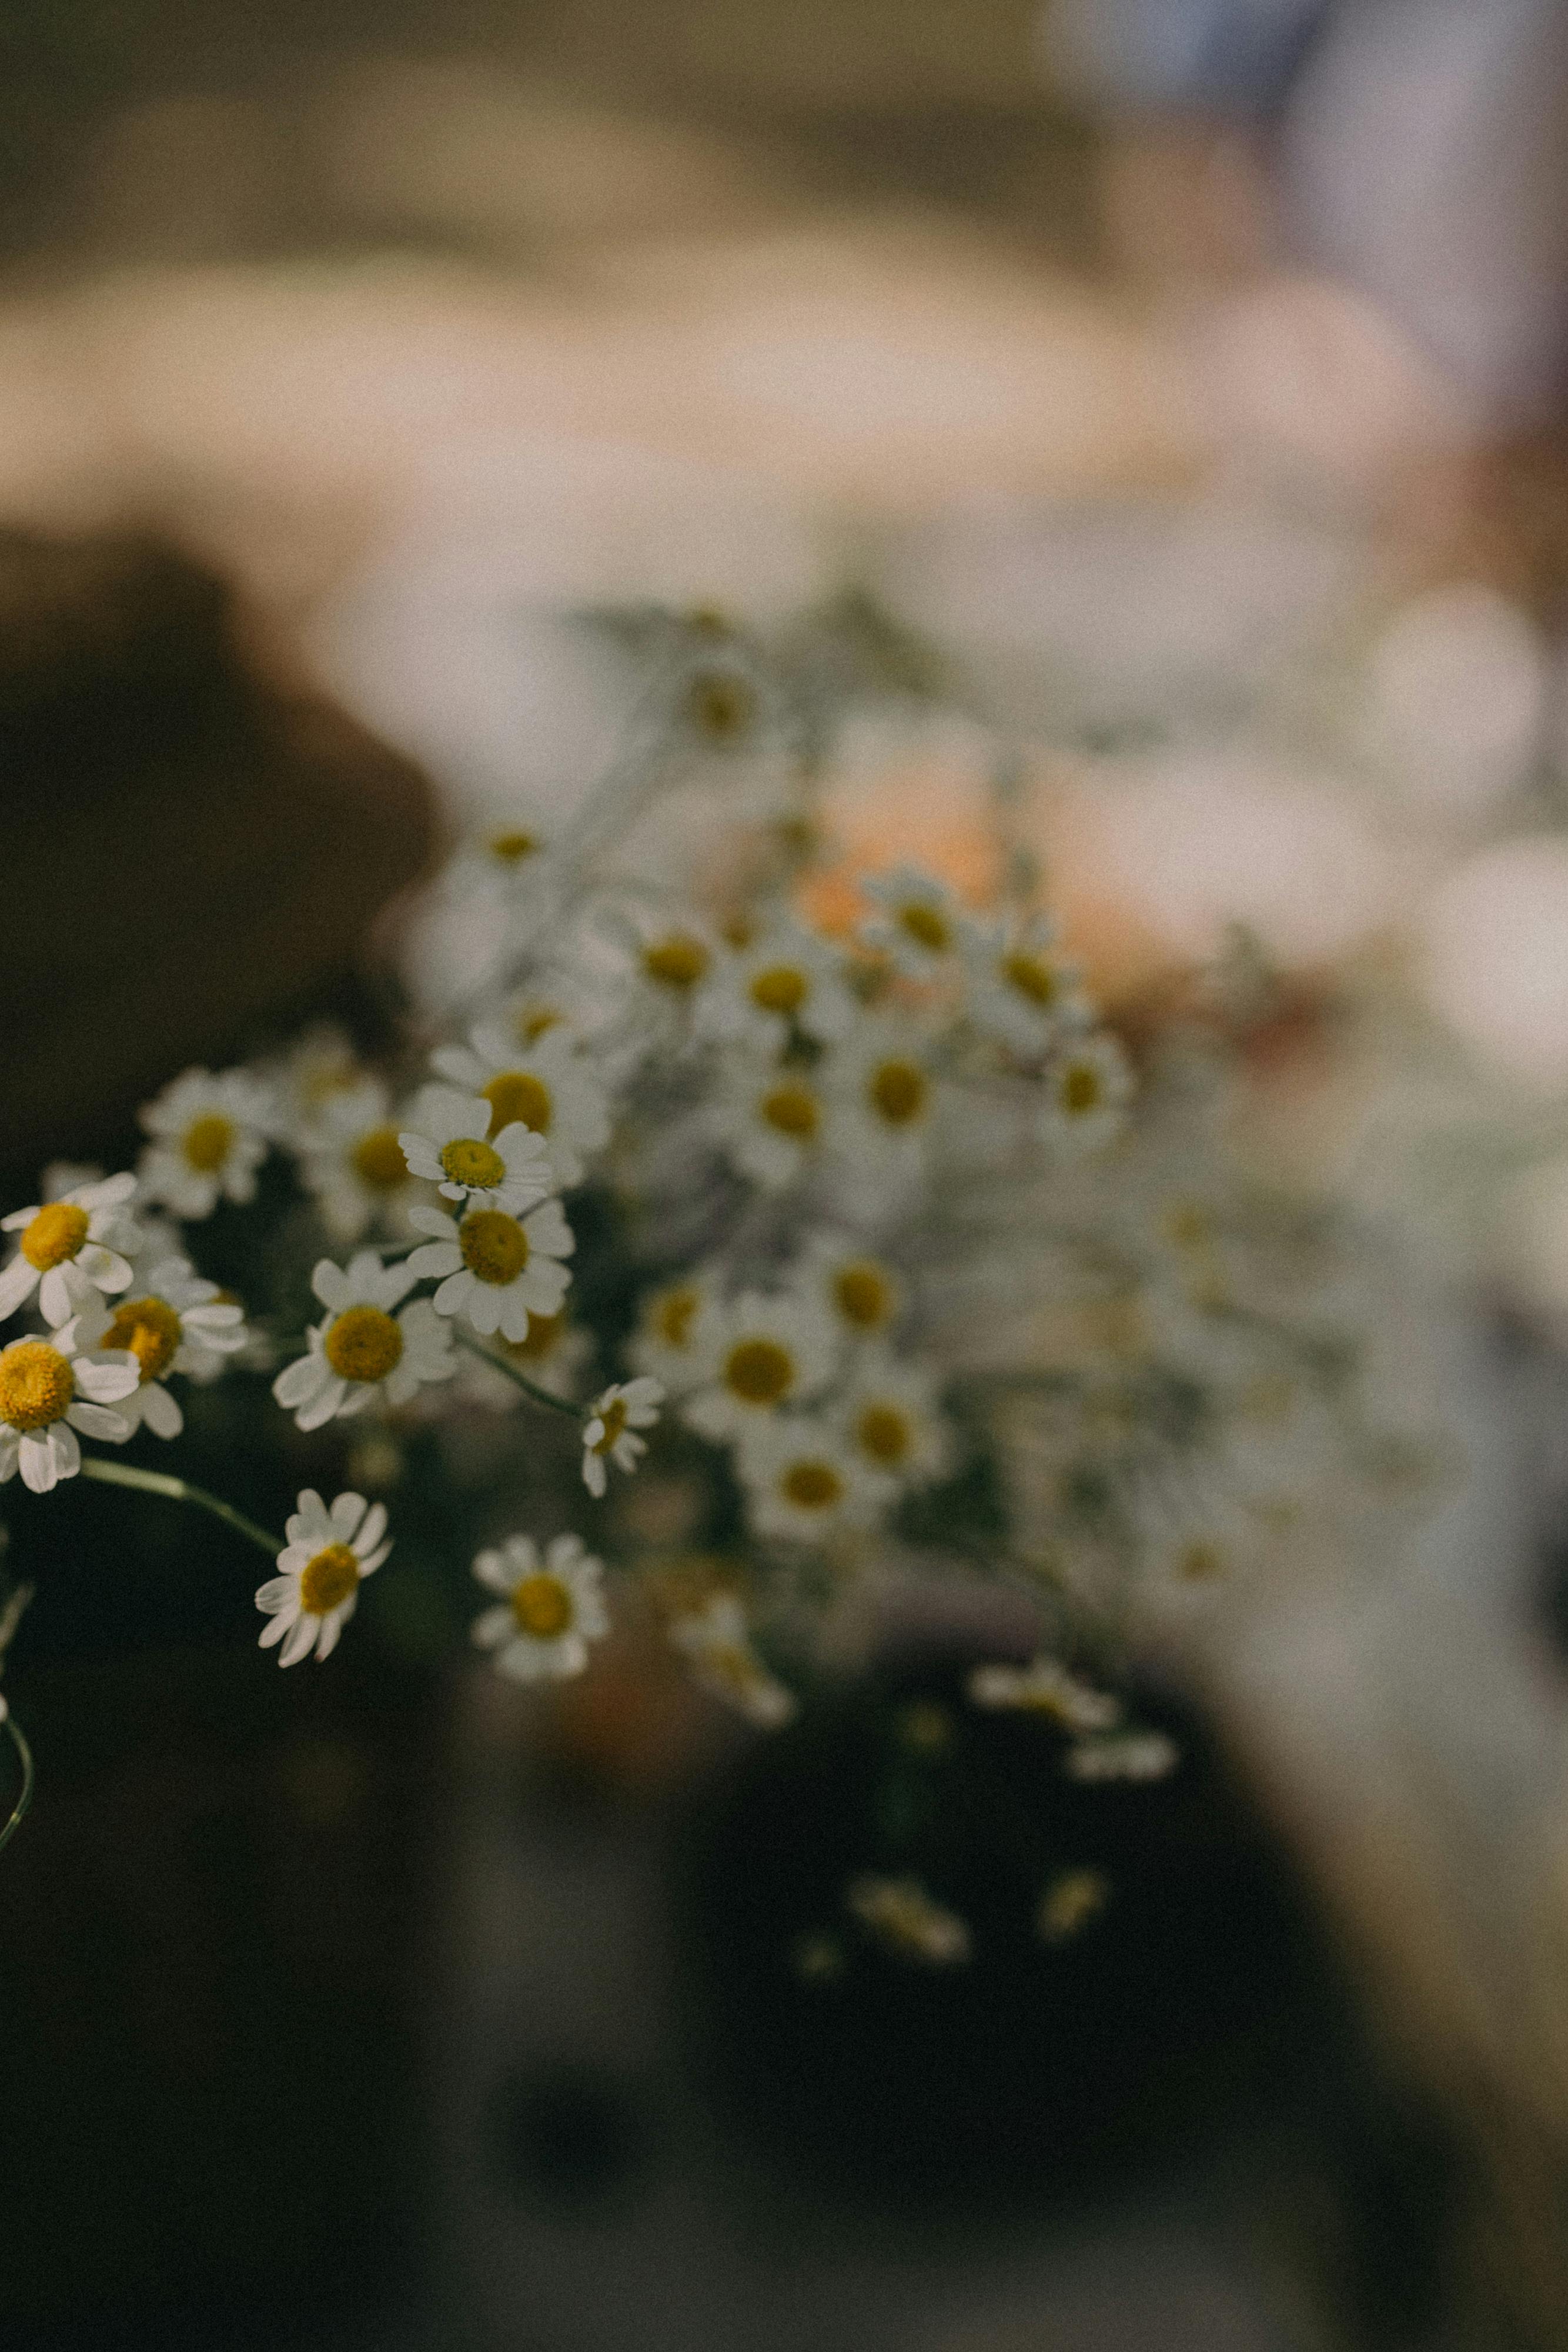 Hoa cúc: Hoa cúc là loài hoa tượng trưng cho sự yên tĩnh và trầm lắng. Các hình ảnh về hoa cúc sẽ là một lựa chọn tuyệt vời cho những người yêu thích sự đơn giản và tinh tế.